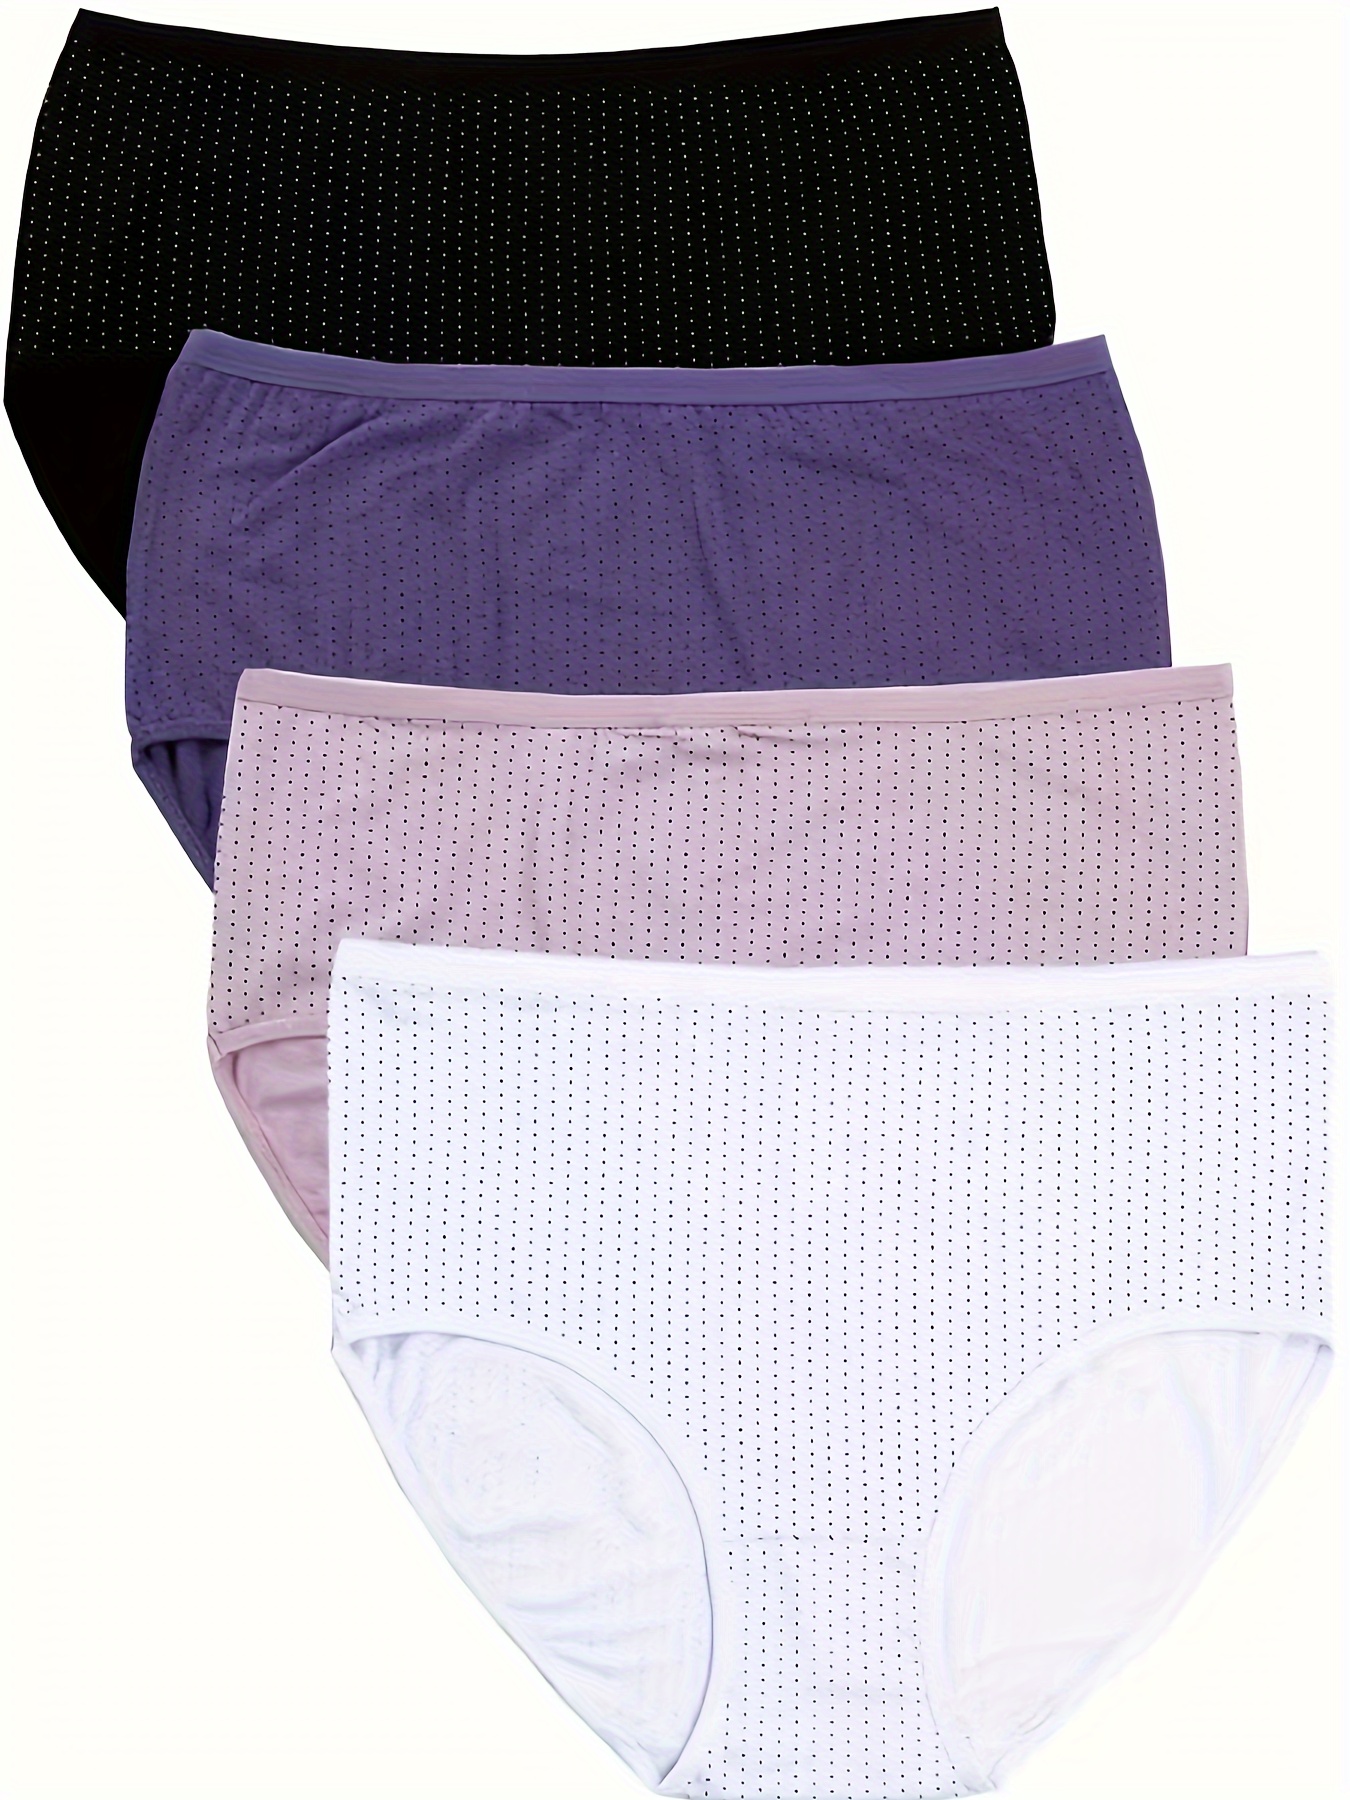 Underwear for Women 5PC Women Solid Color Patchwork Briefs Panties  Underwear Panties for Women Seamless Underwear for Women Period Underwear  for Women